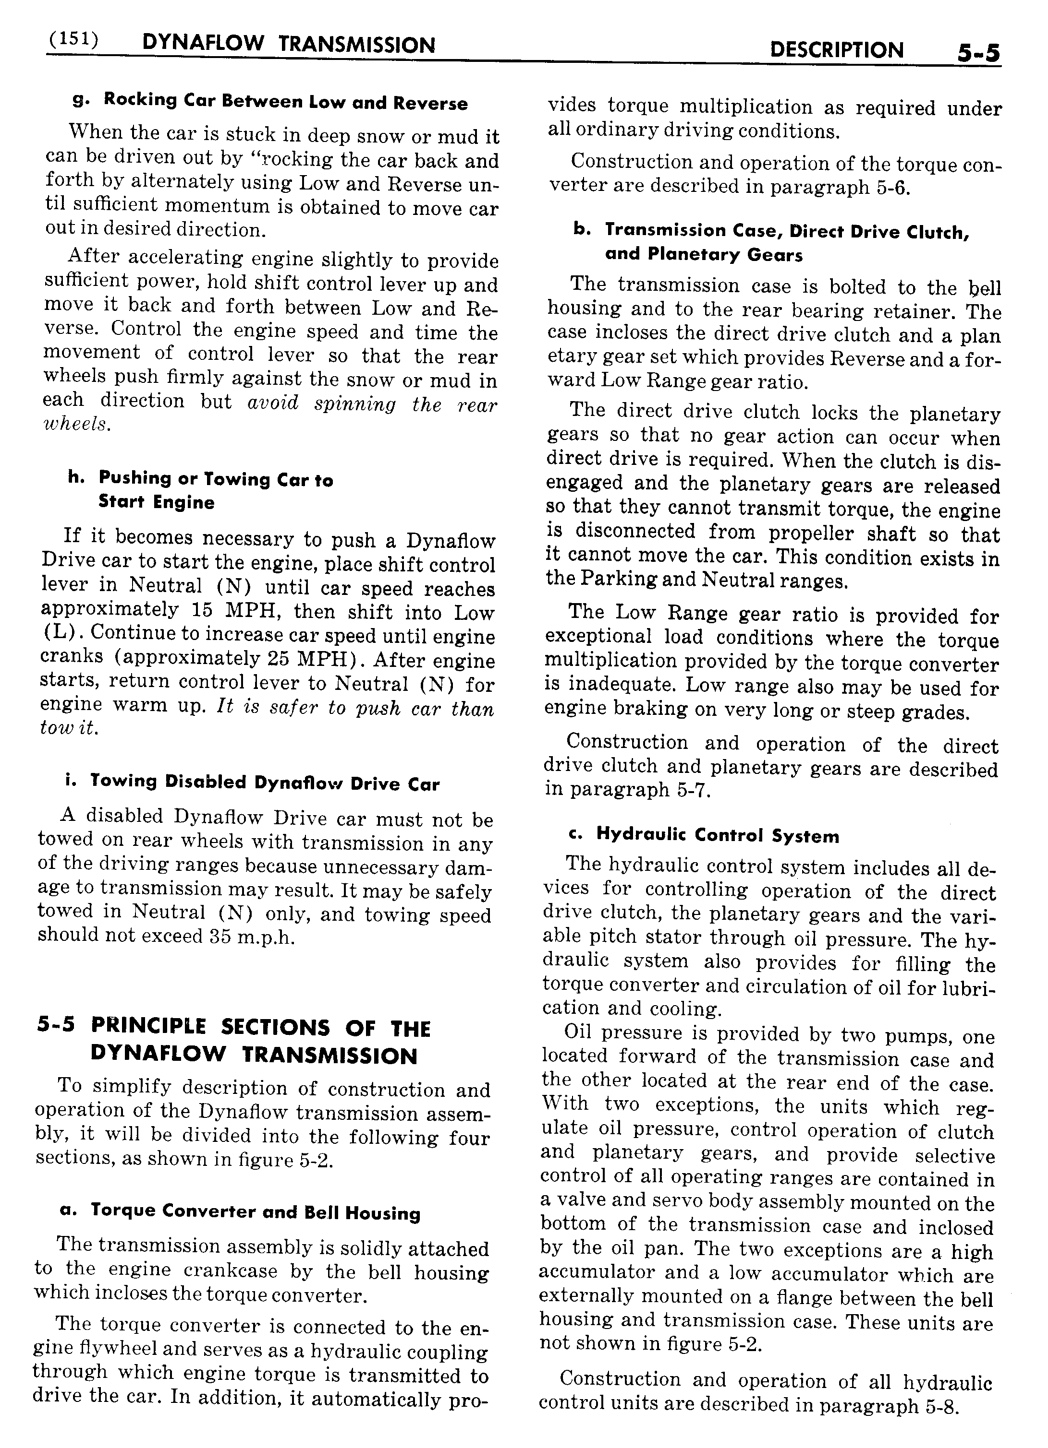 n_06 1956 Buick Shop Manual - Dynaflow-005-005.jpg